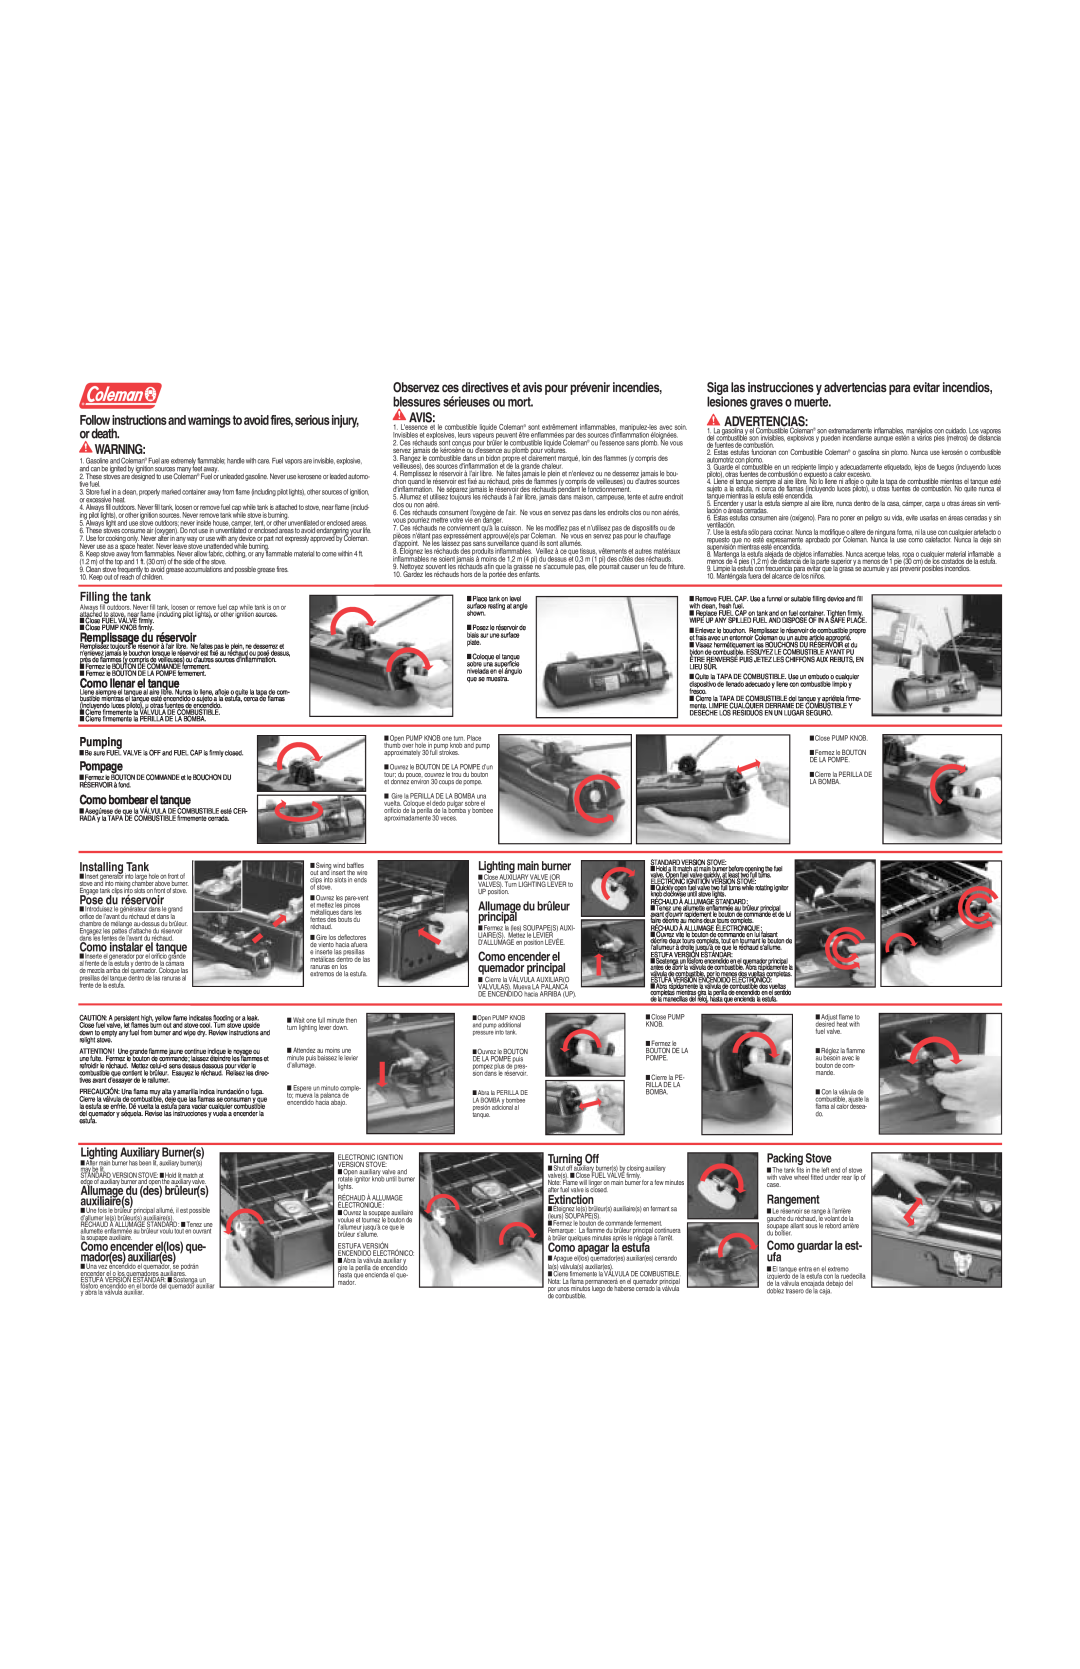 Coleman Dual Fuel Stove warranty Avis, Advertencias 